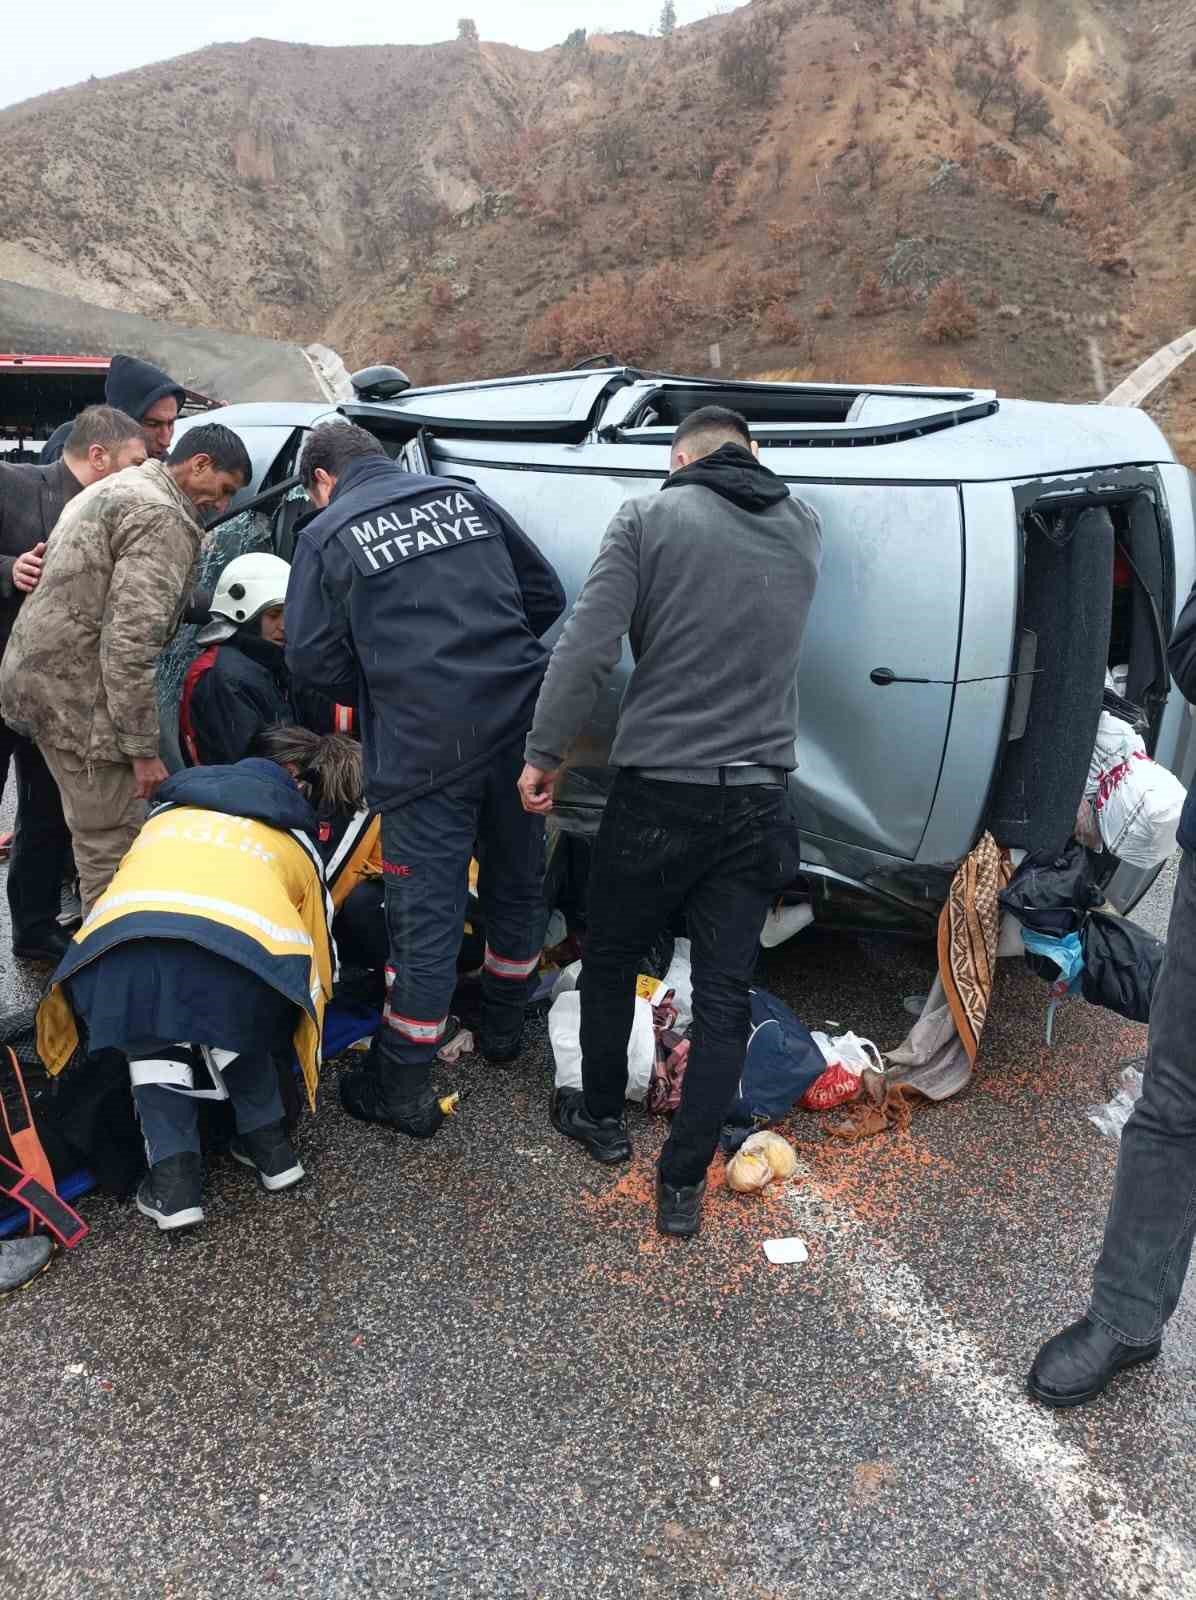 Malatya’da 3 ayrı trafik kazasında 7 kişi yaralandı